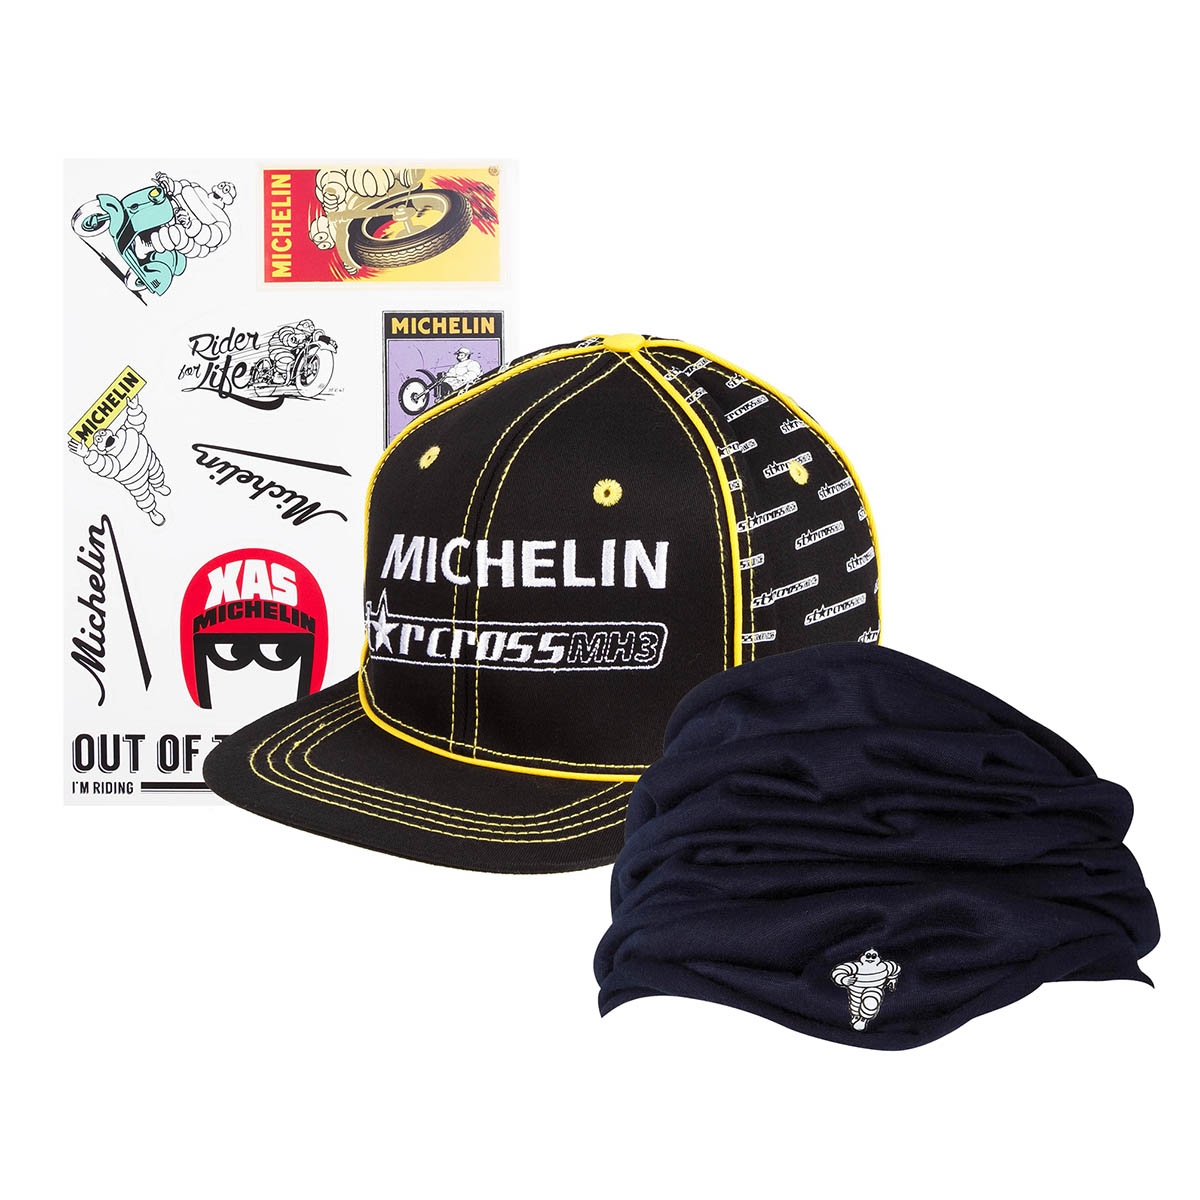 Michelin Schlauchschal inkl. Cap und Stickerbogen